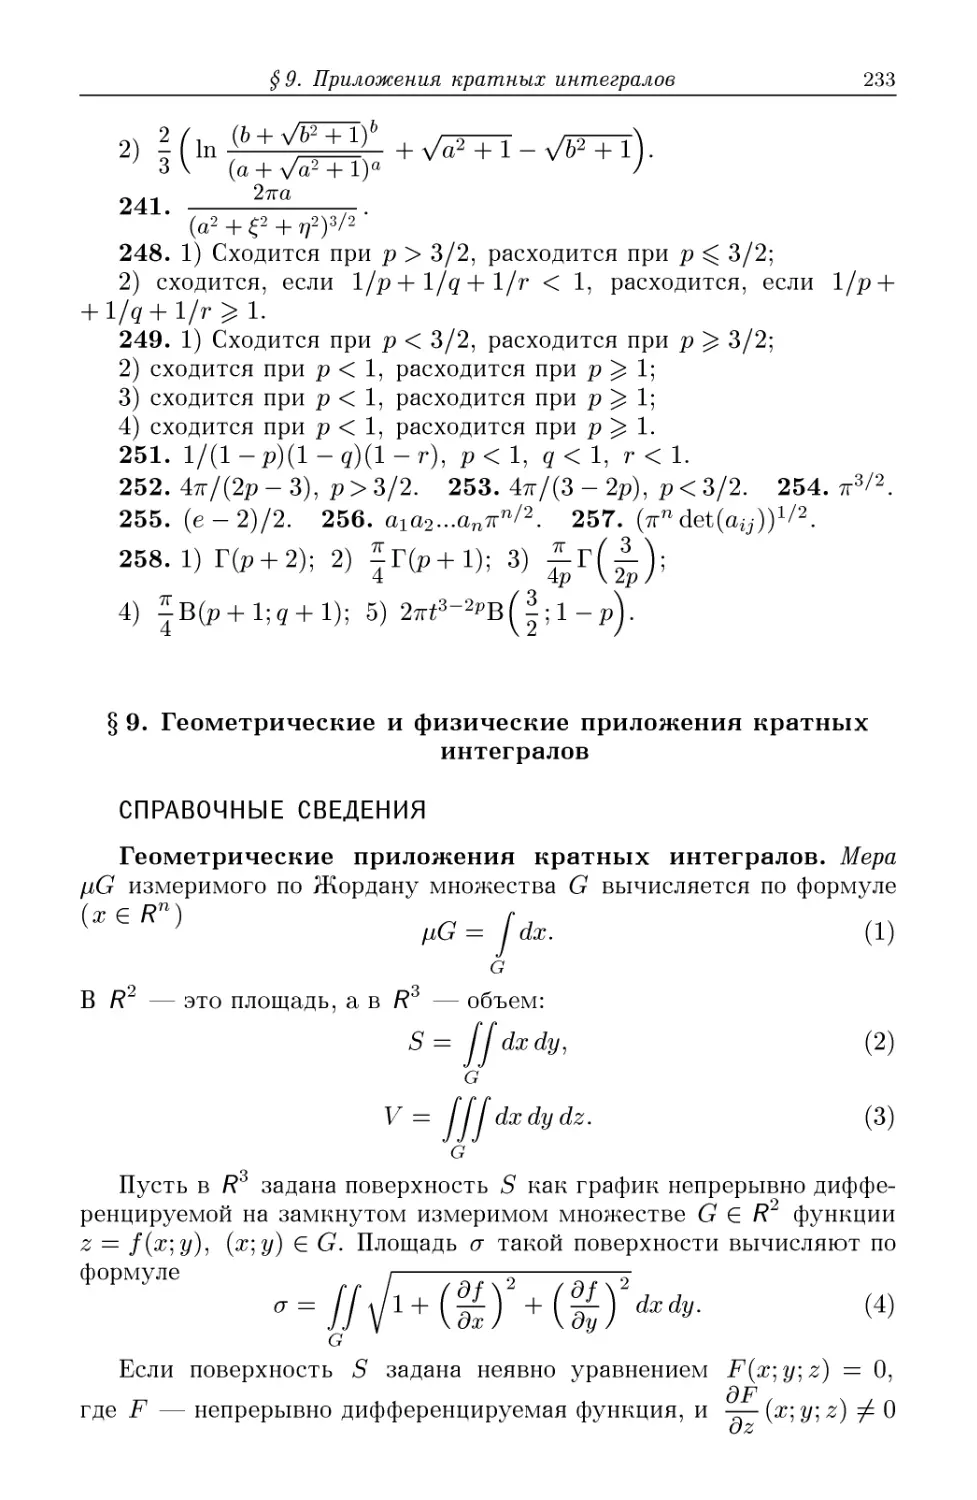 §9. Геометрические и физические приложения кратных интегралов